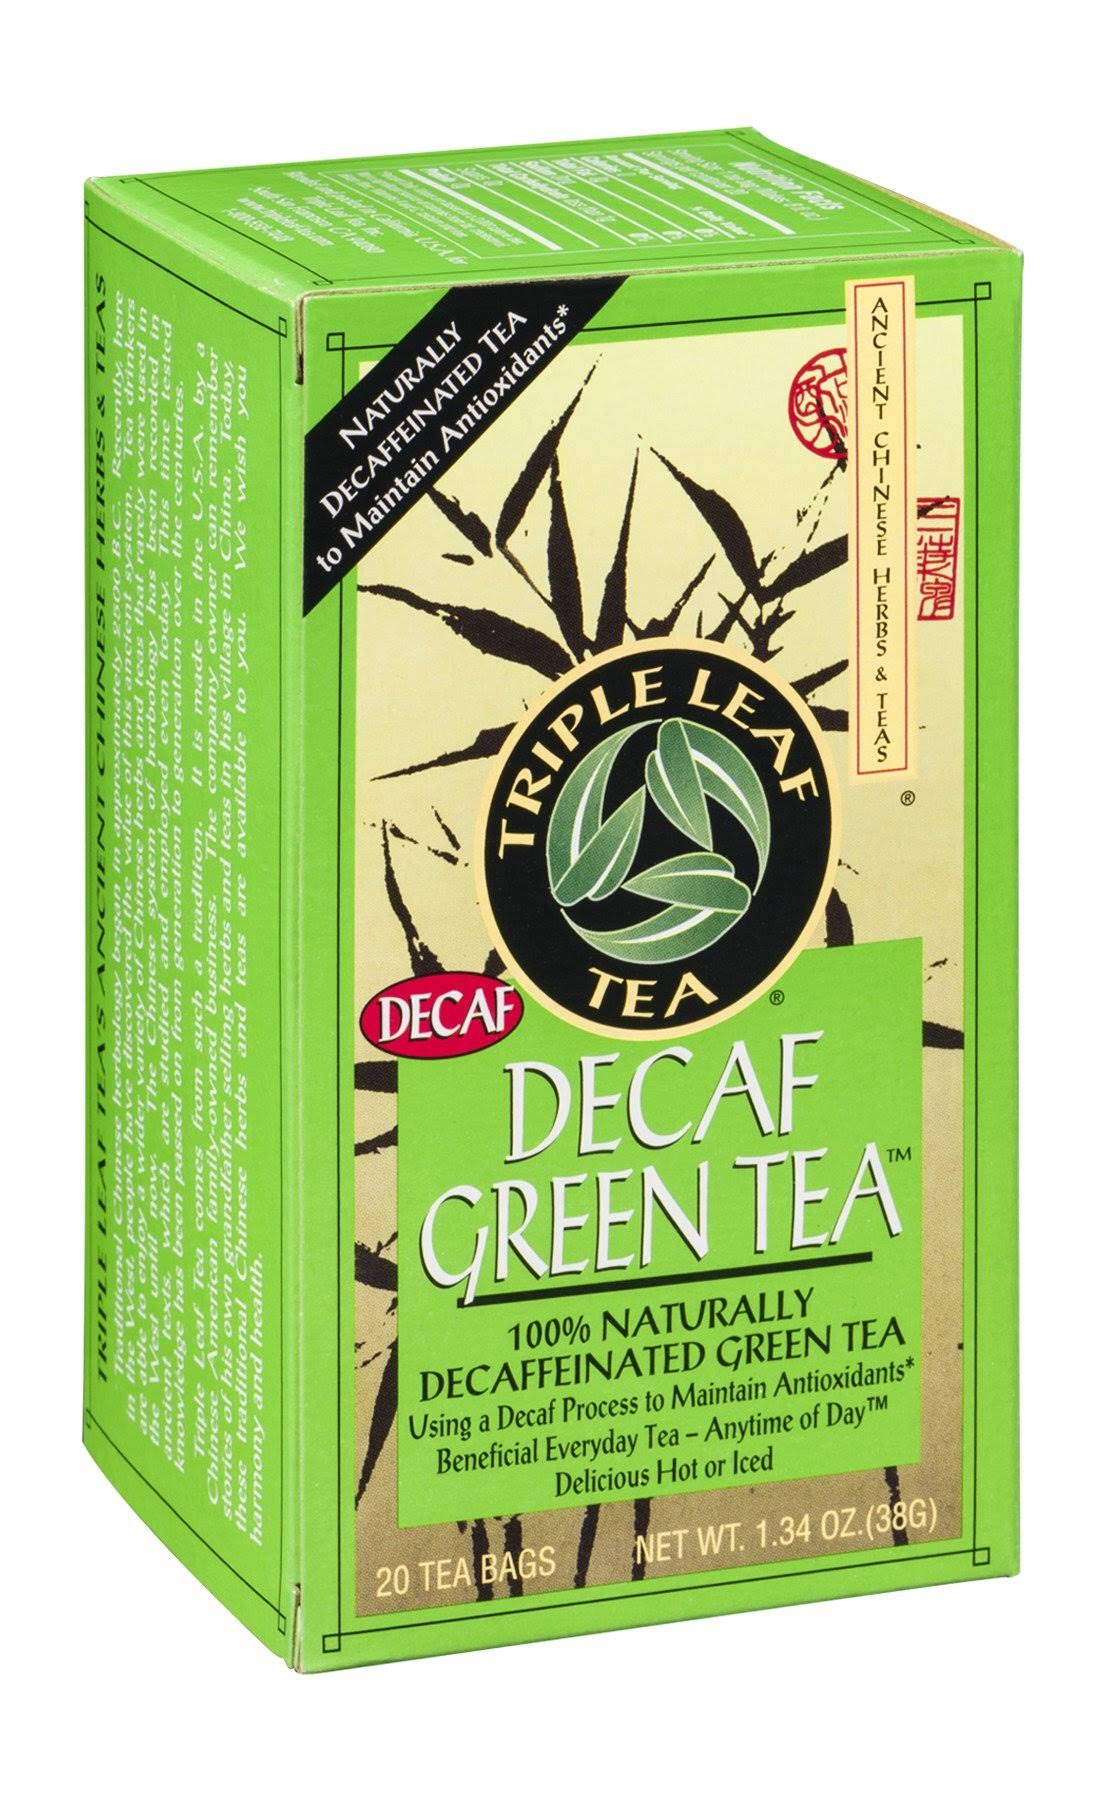 Triple Leaf Tea Decaf Green Tea